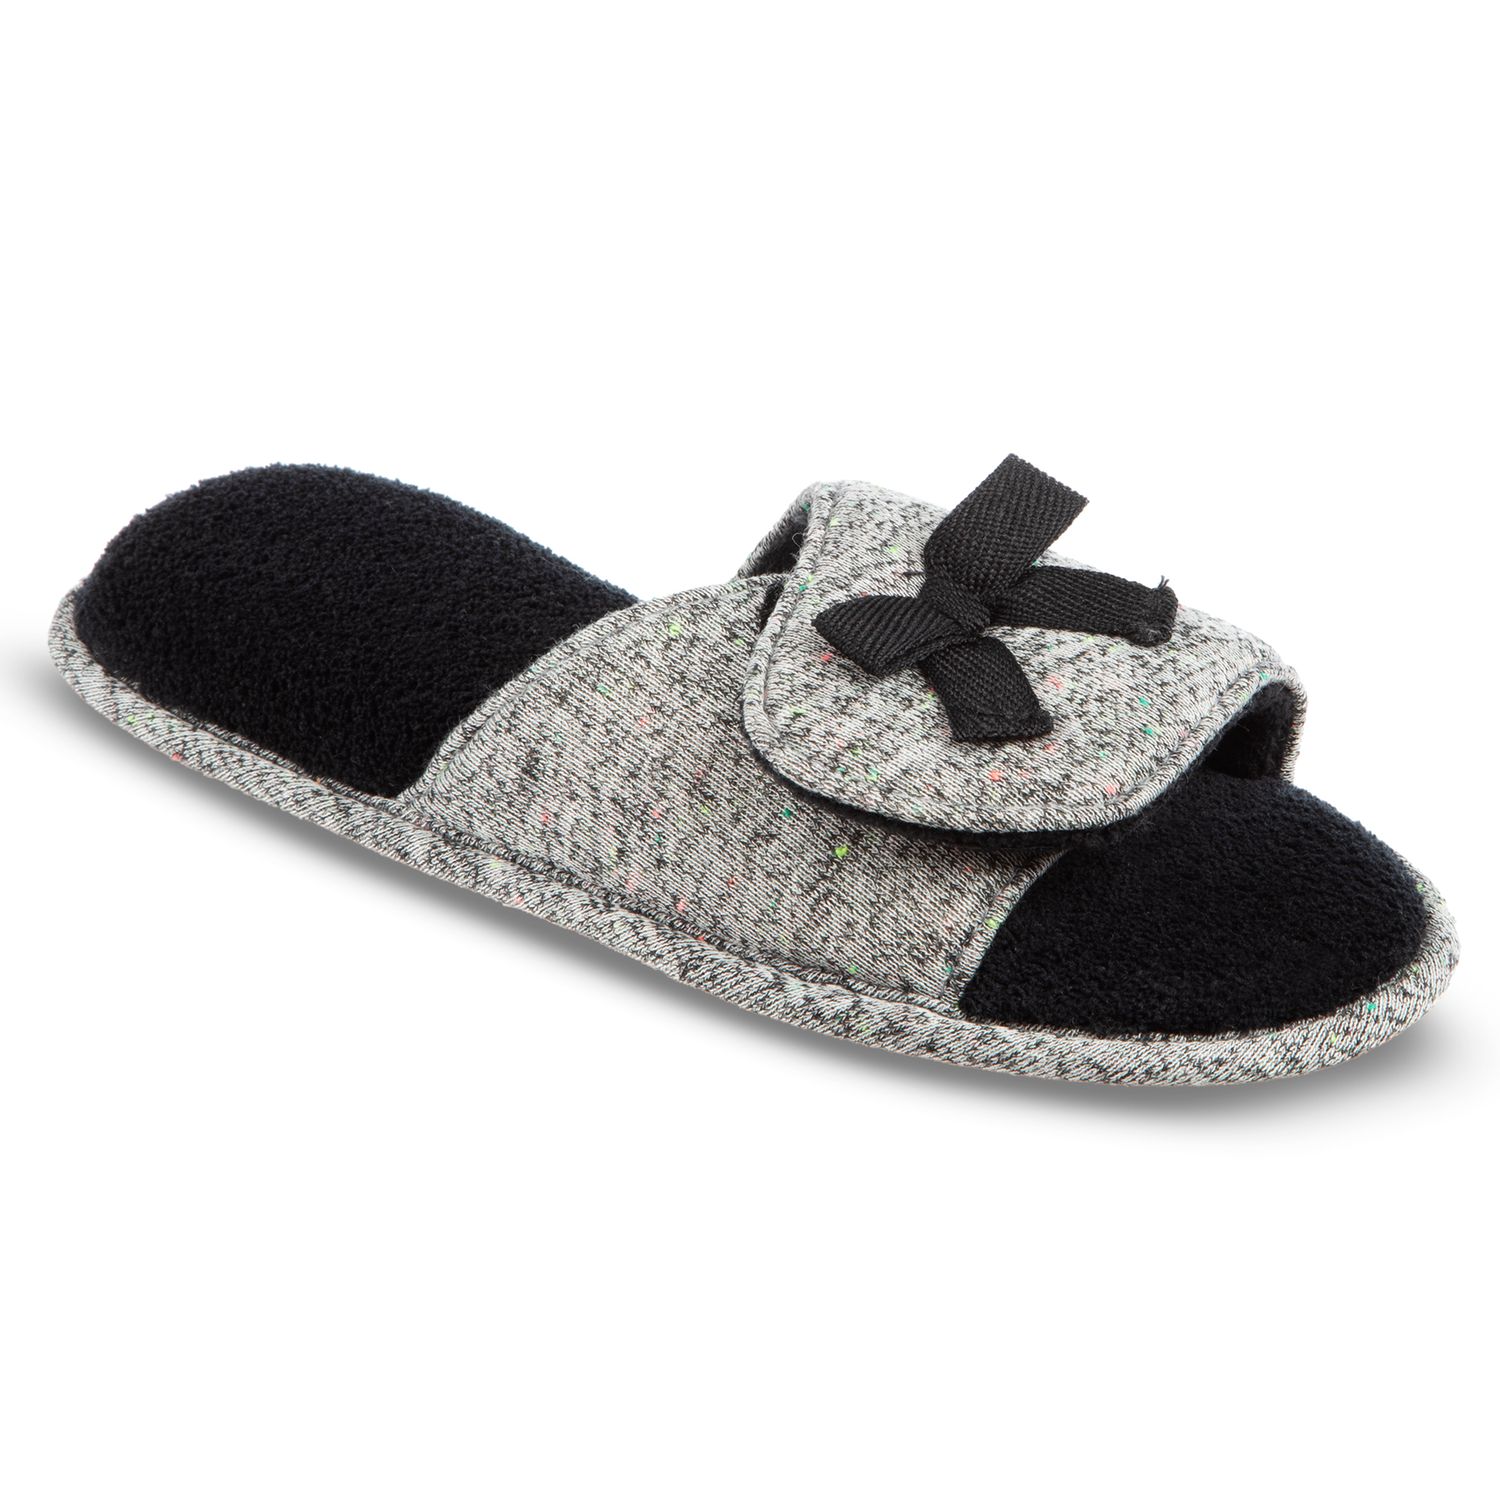 isotoner women's slippers memory foam